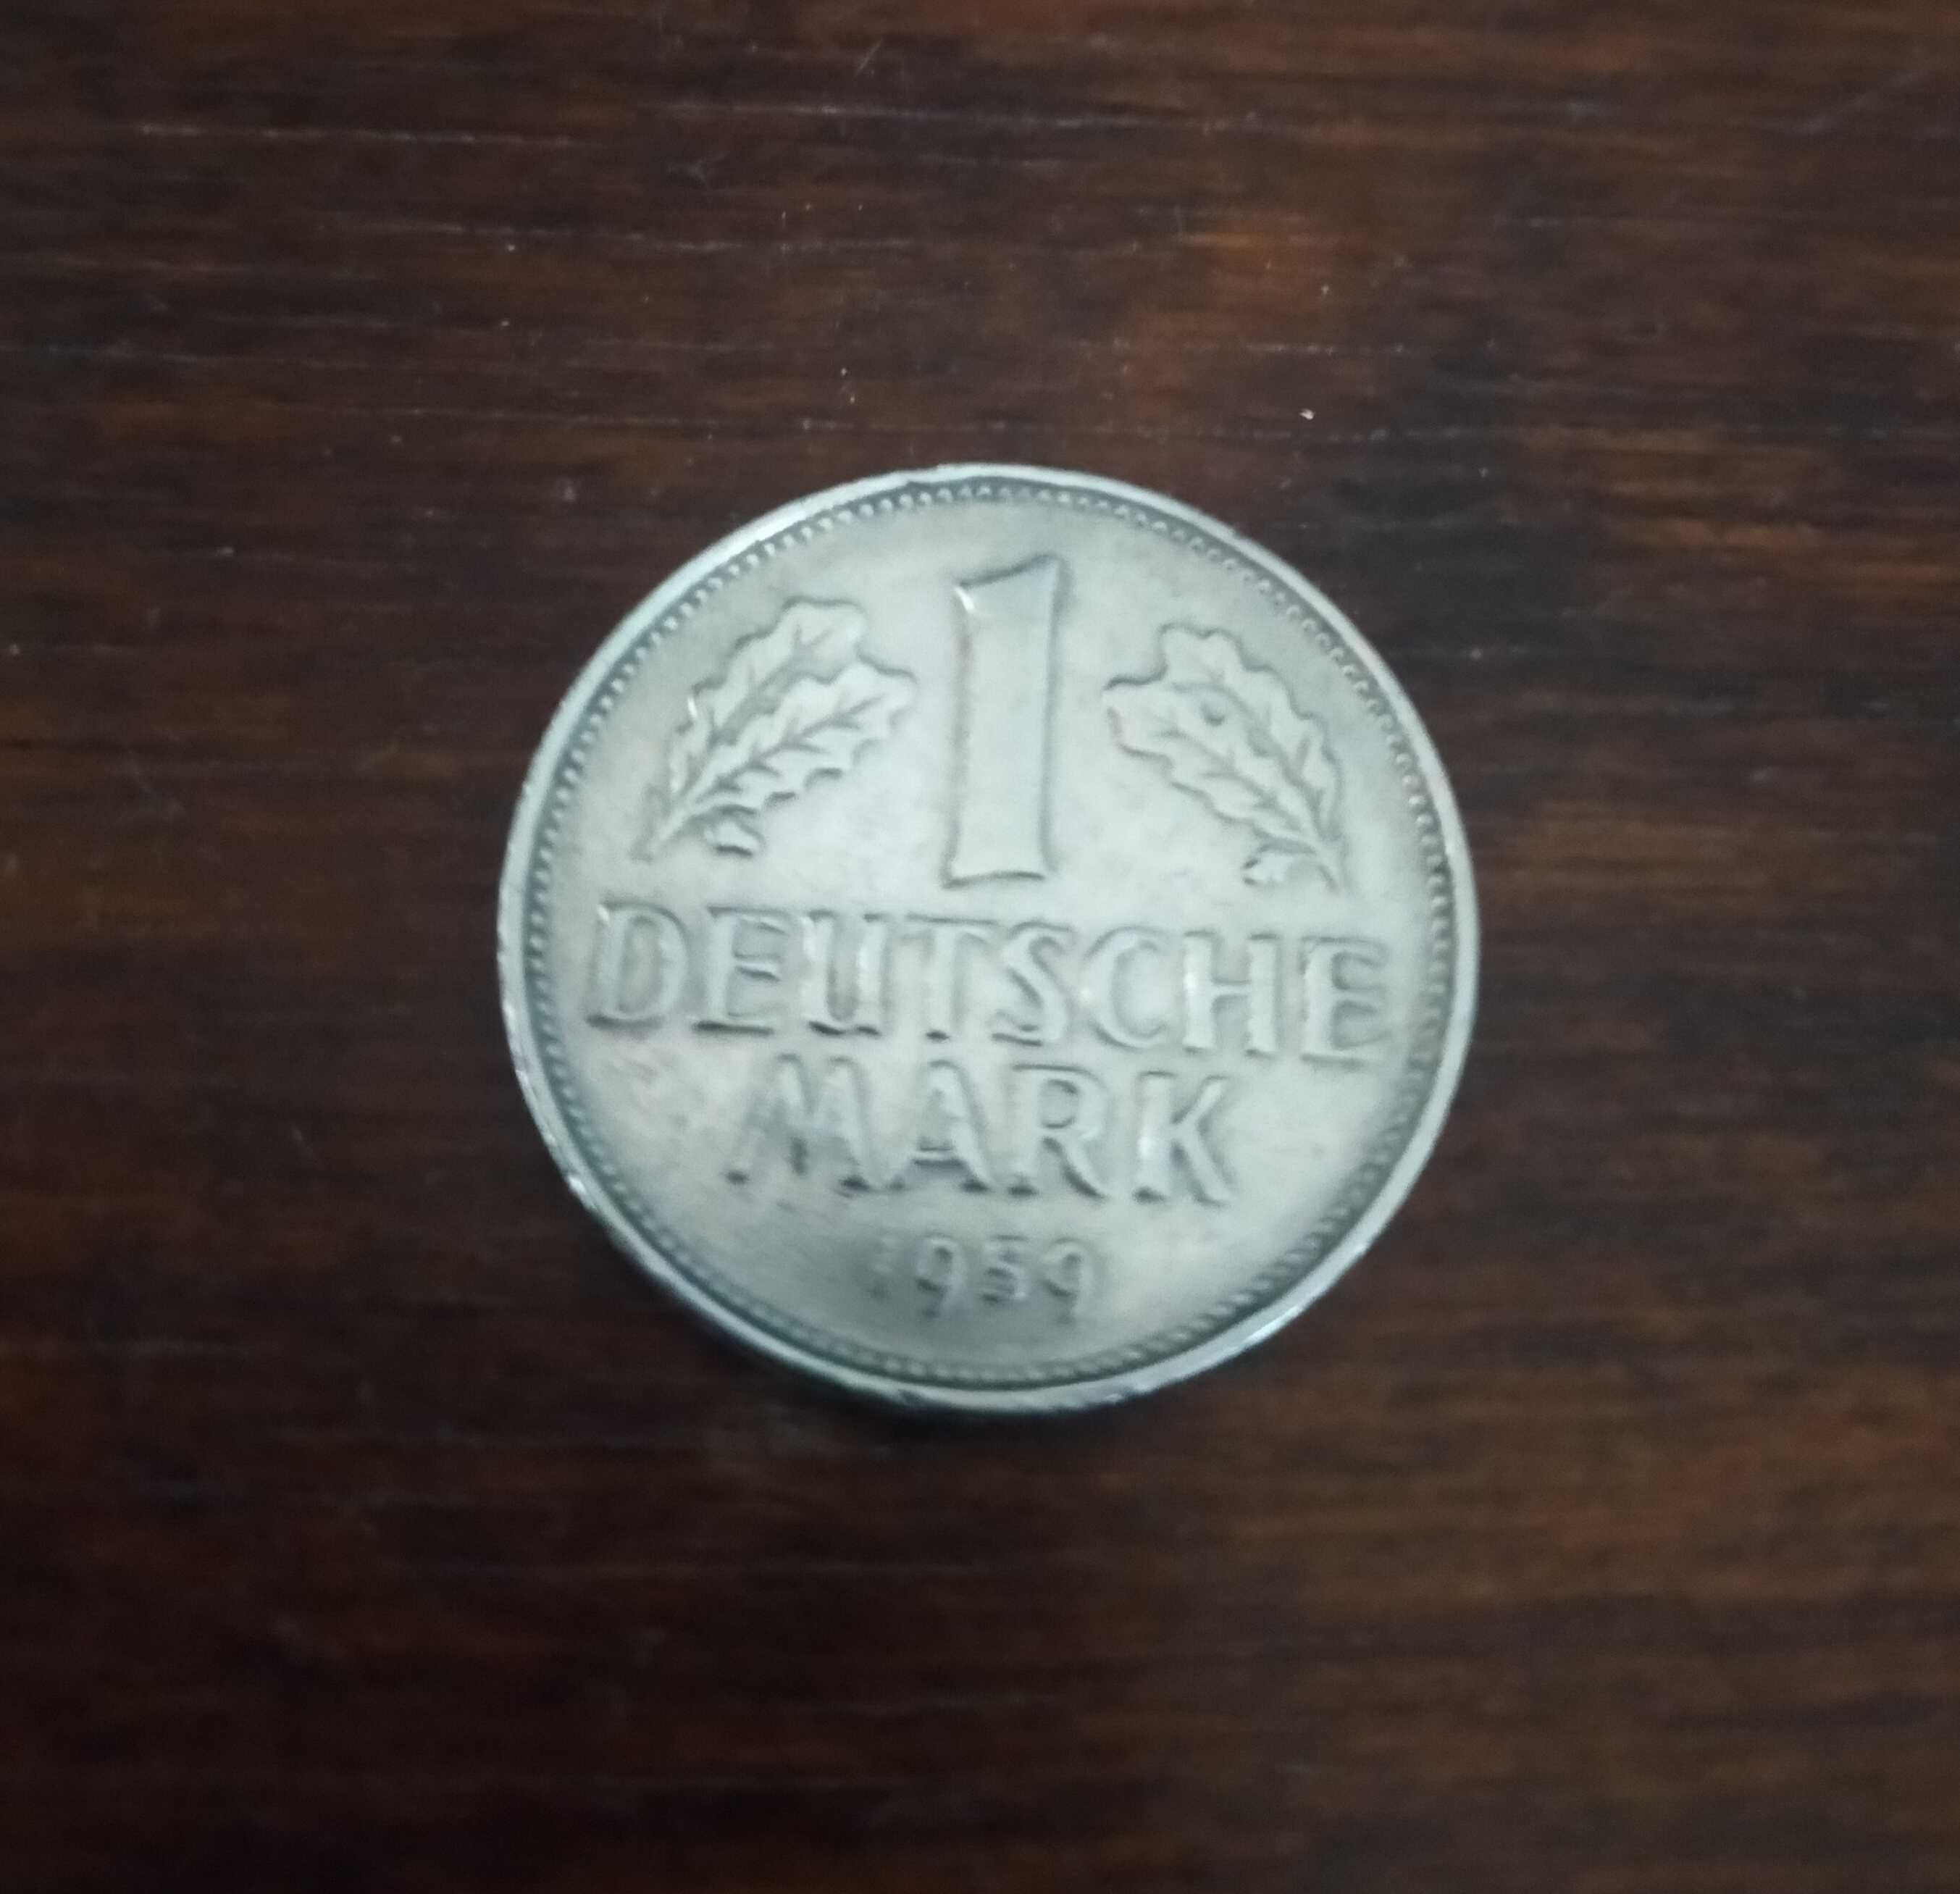 1 marka niemiecka z 1959 r.